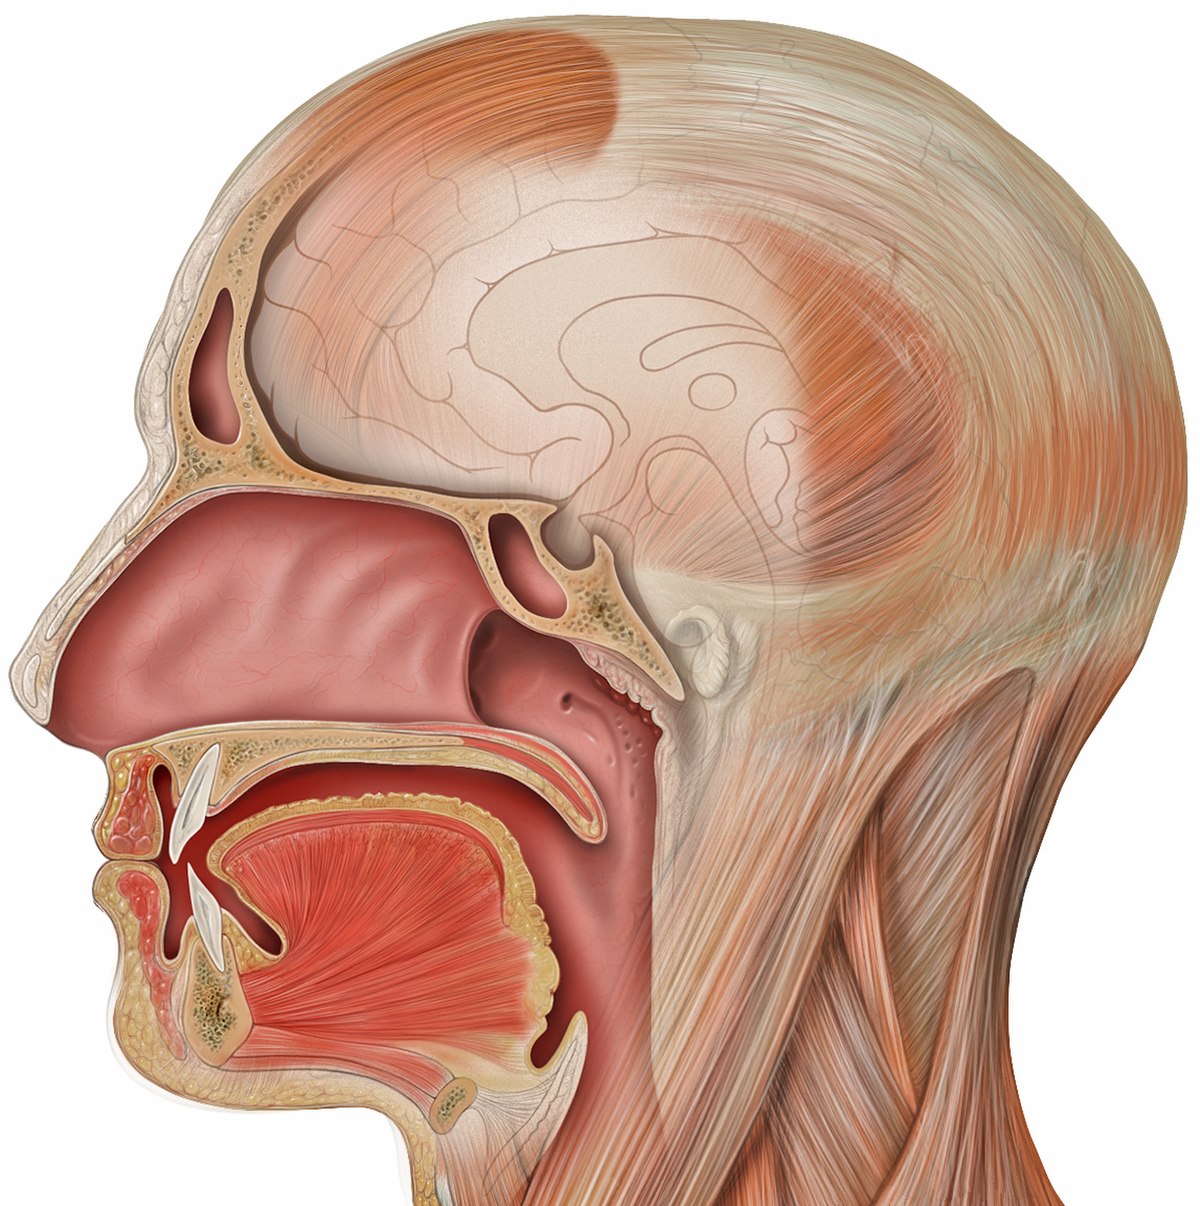 Sinus maxillaire — Wikipédia